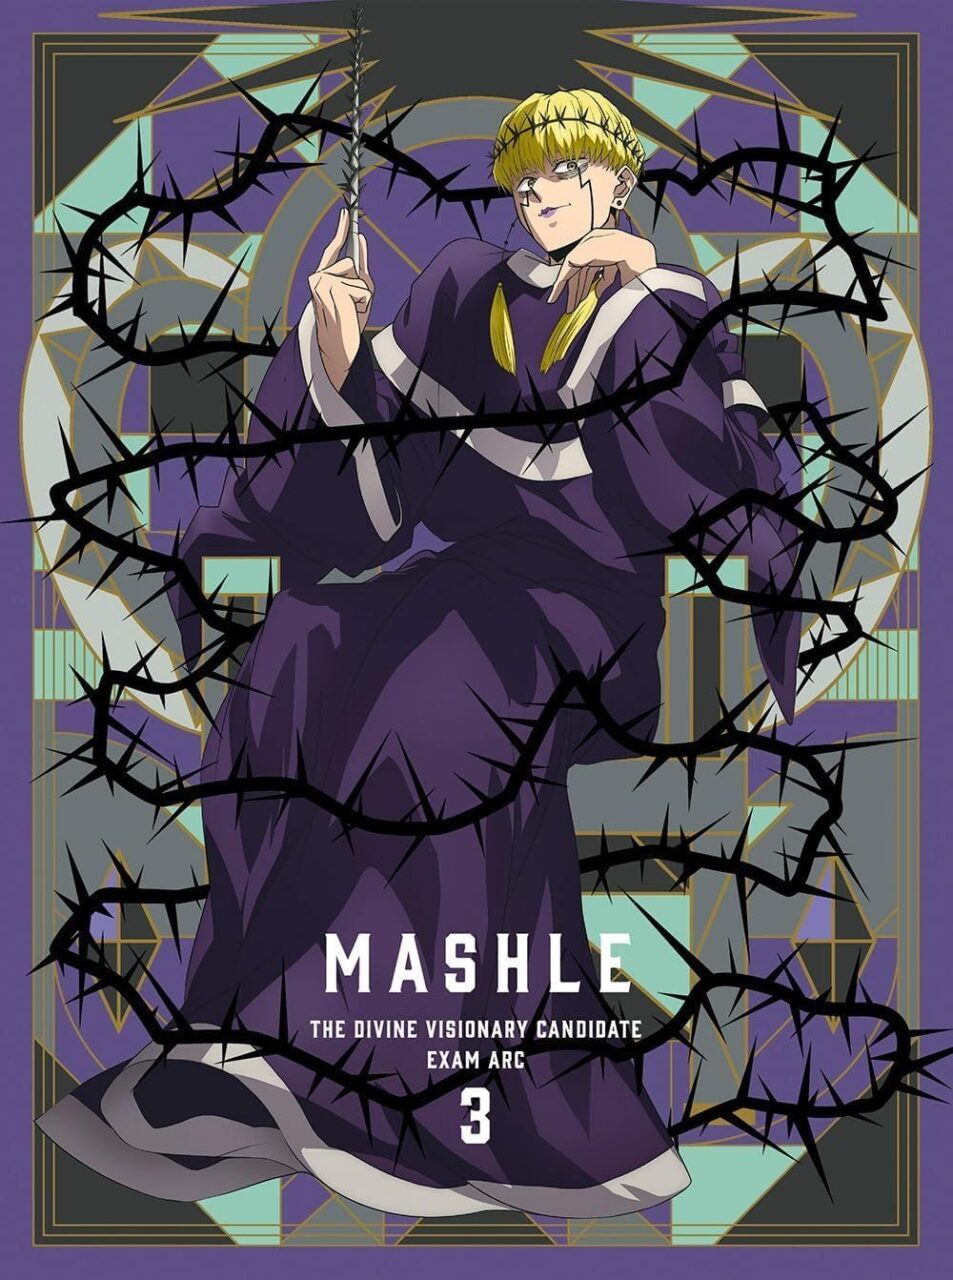 「マッシュル-MASHLE- 神覚者候補選抜試験編」アニメのBlu-ray･DVD